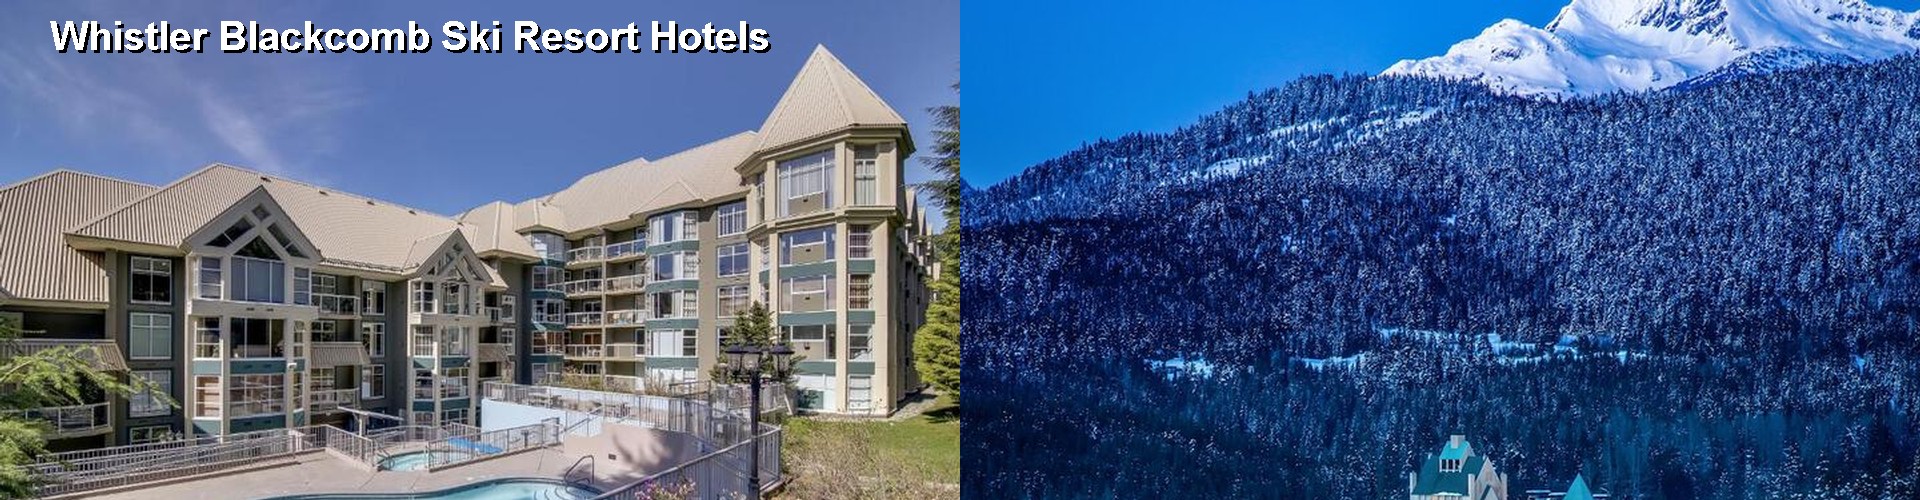 5 Best Hotels near Whistler Blackcomb Ski Resort